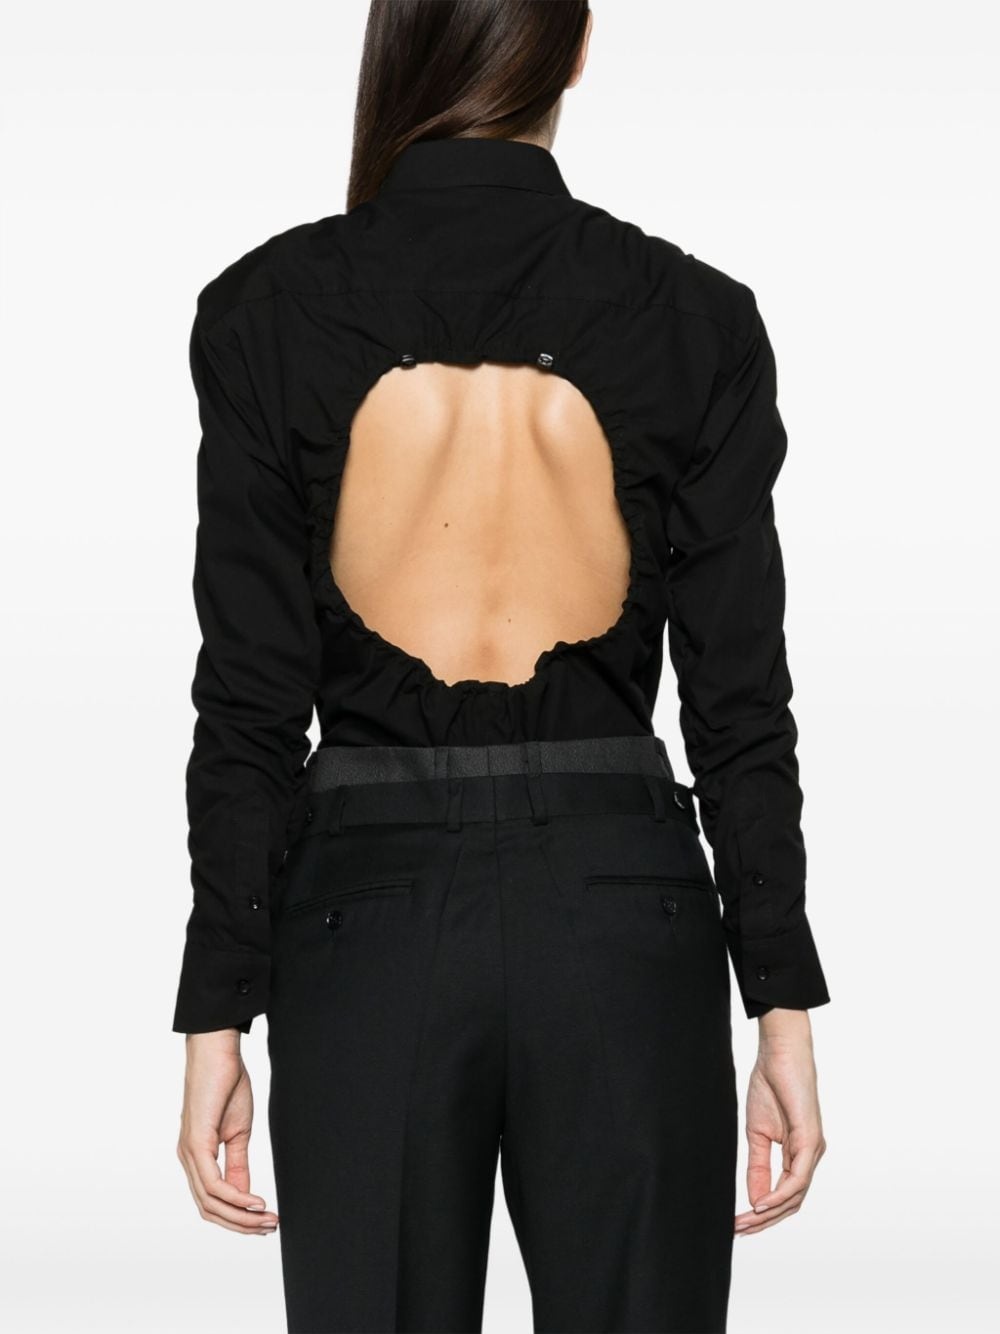 underwired cotton bodysuit - 4